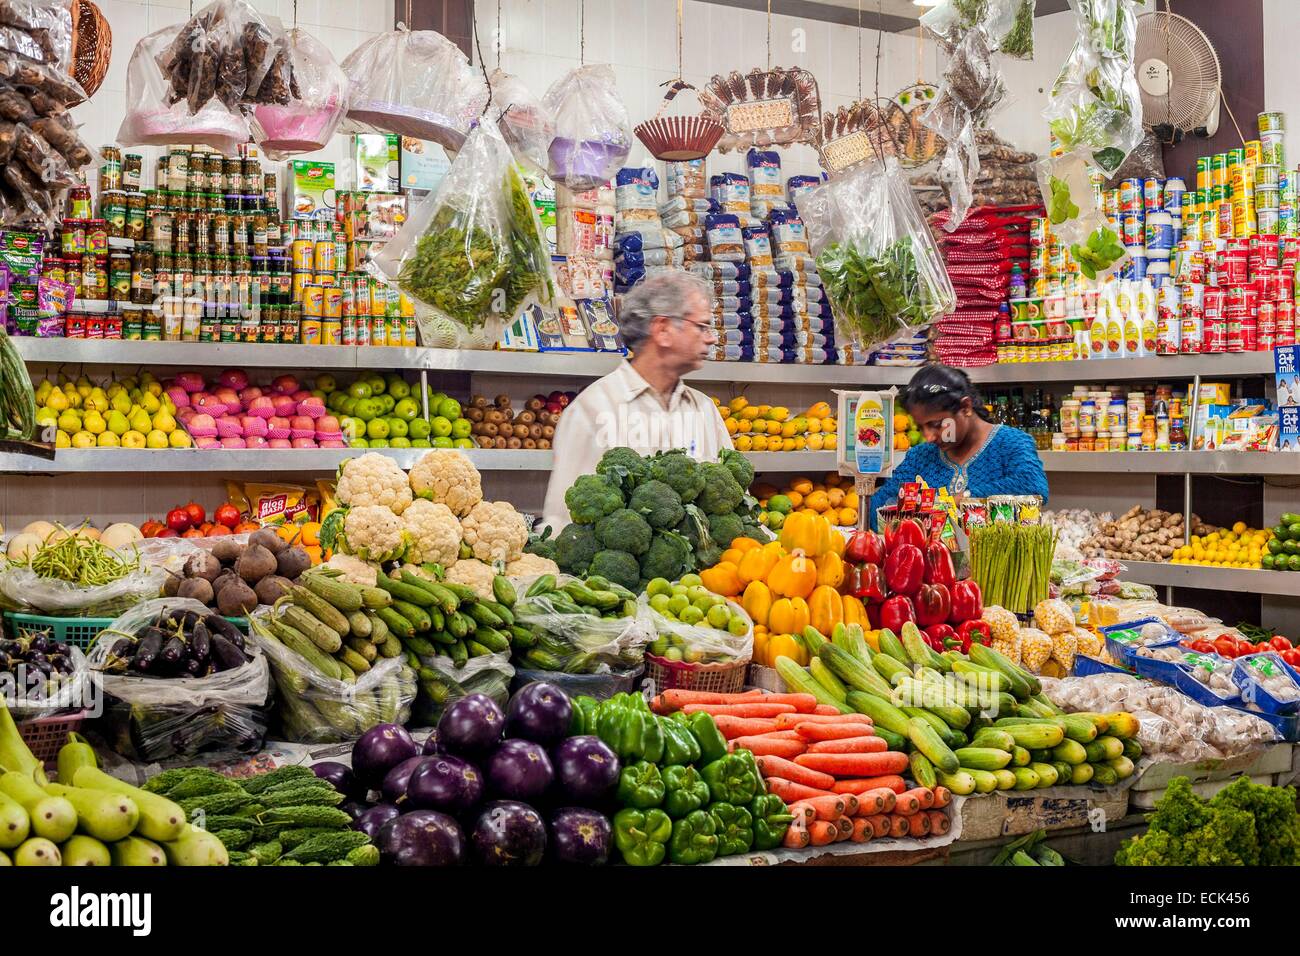 Indien, Neu-Delhi, INA Market (Indian National Army Market), Lebensmittelmarkt, verkaufen Obst und Gemüse Stockfoto